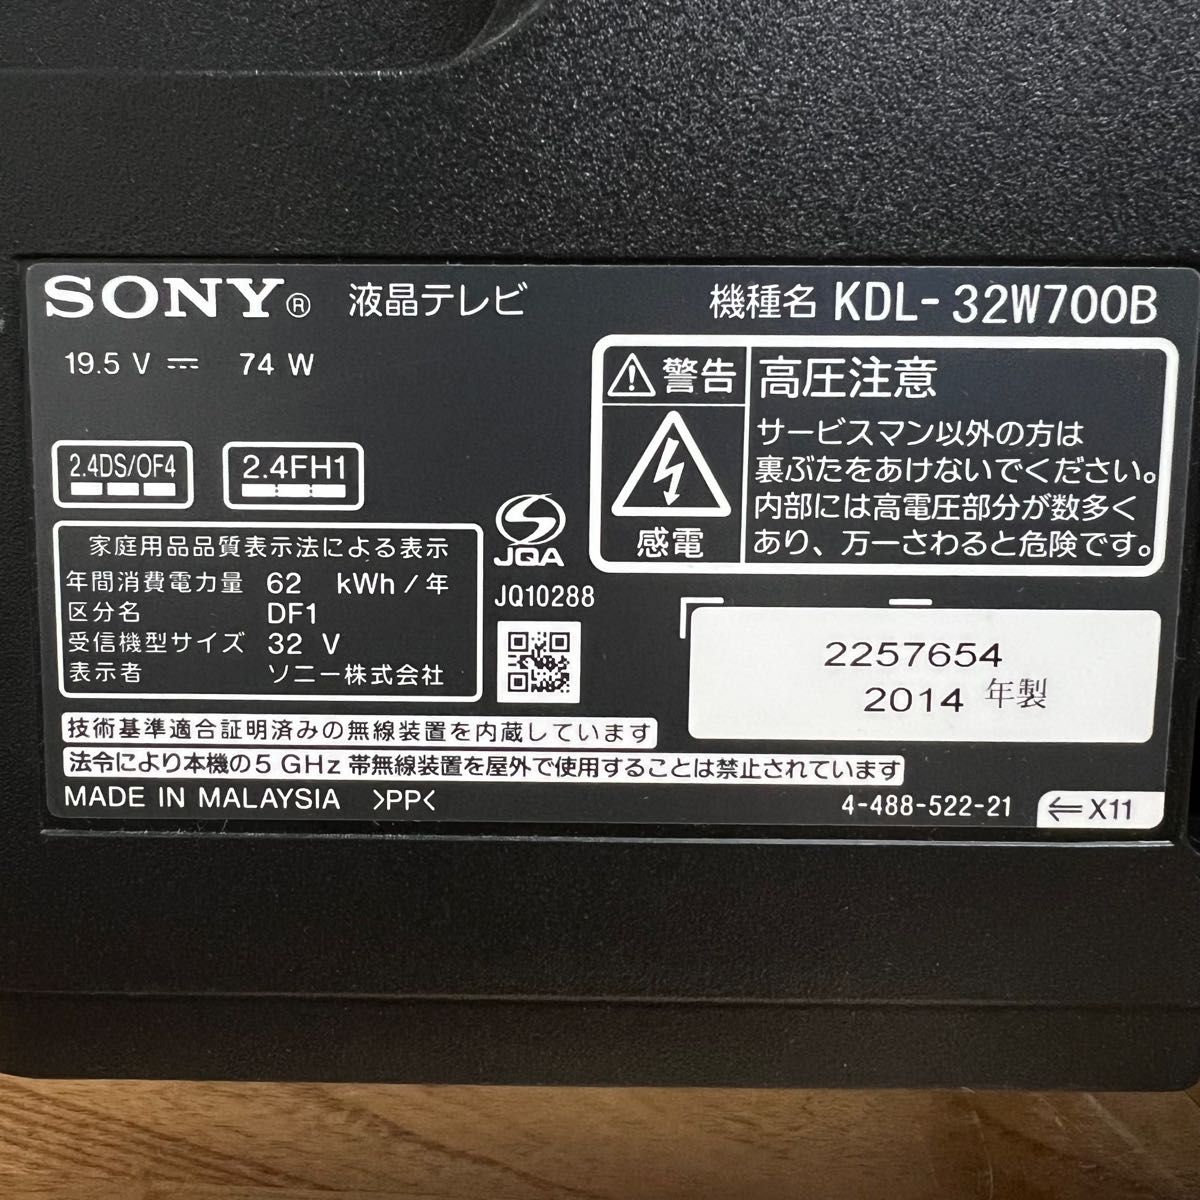 SONY ブラビア フルHD 32V型 液晶テレビ KDL-32W700B+